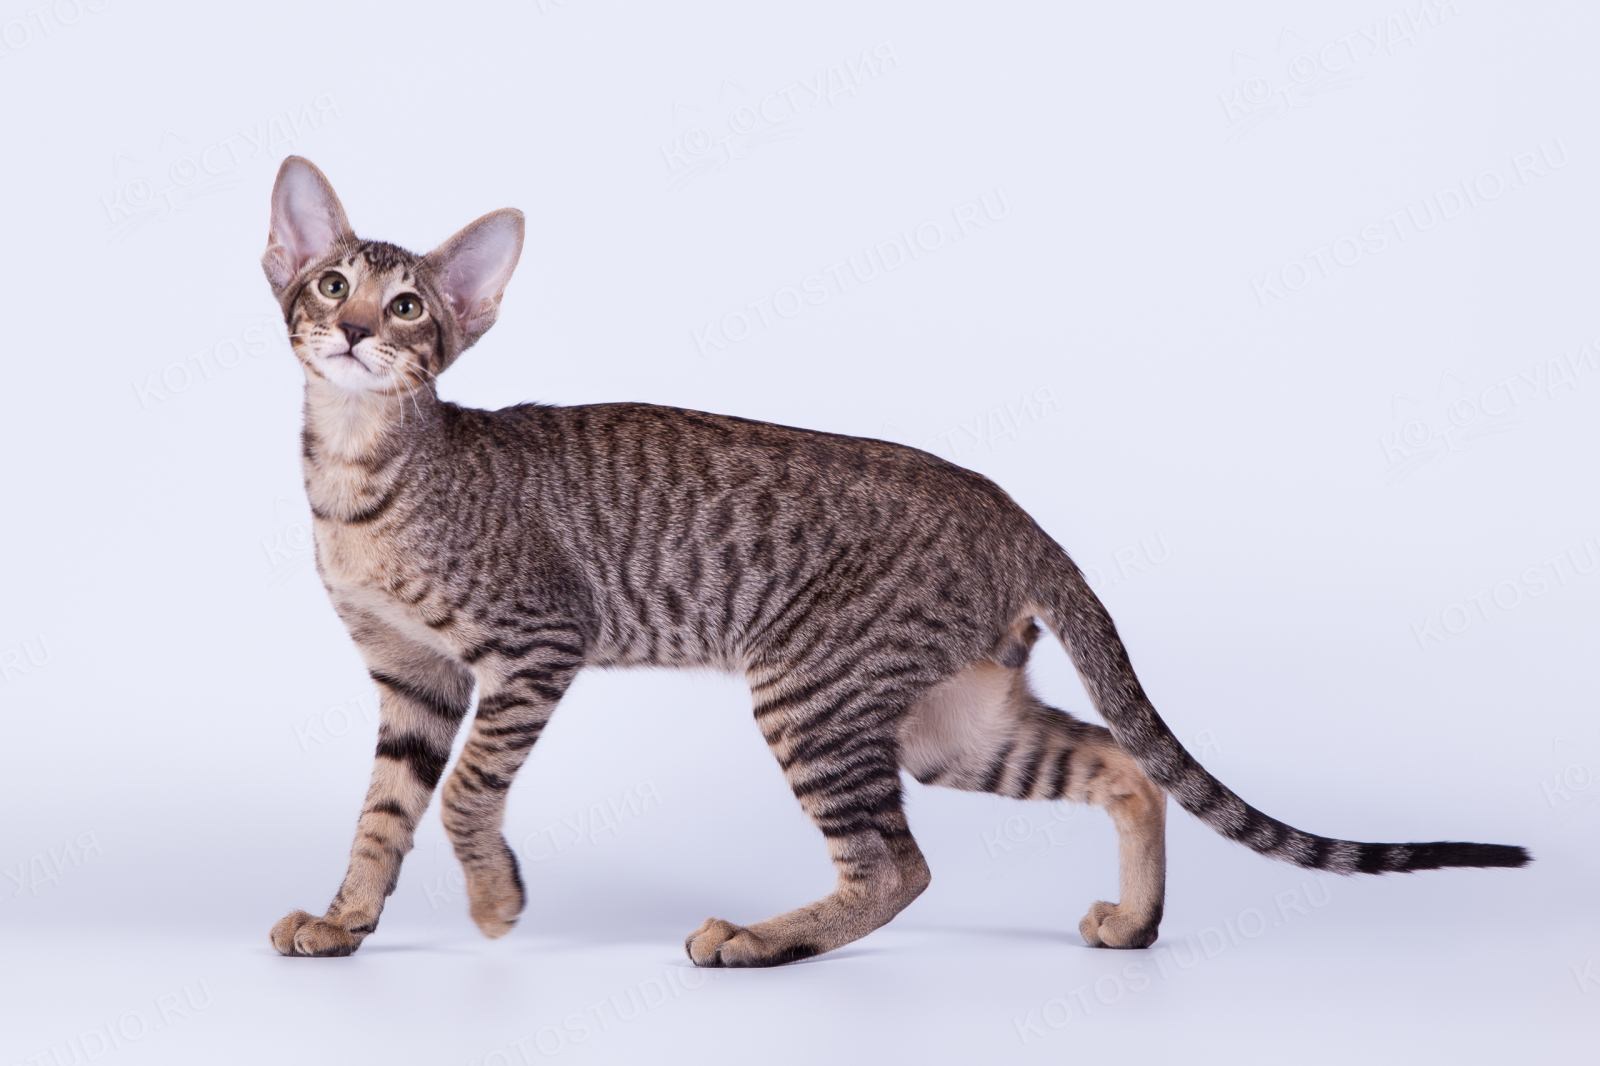 Окрас кошки породы ориентальная. Ориентальная кошка тигровая. Ориентальная кошка табби. Ориентал кошки полосатый окрас. Ориентальная кошка пятнистая.